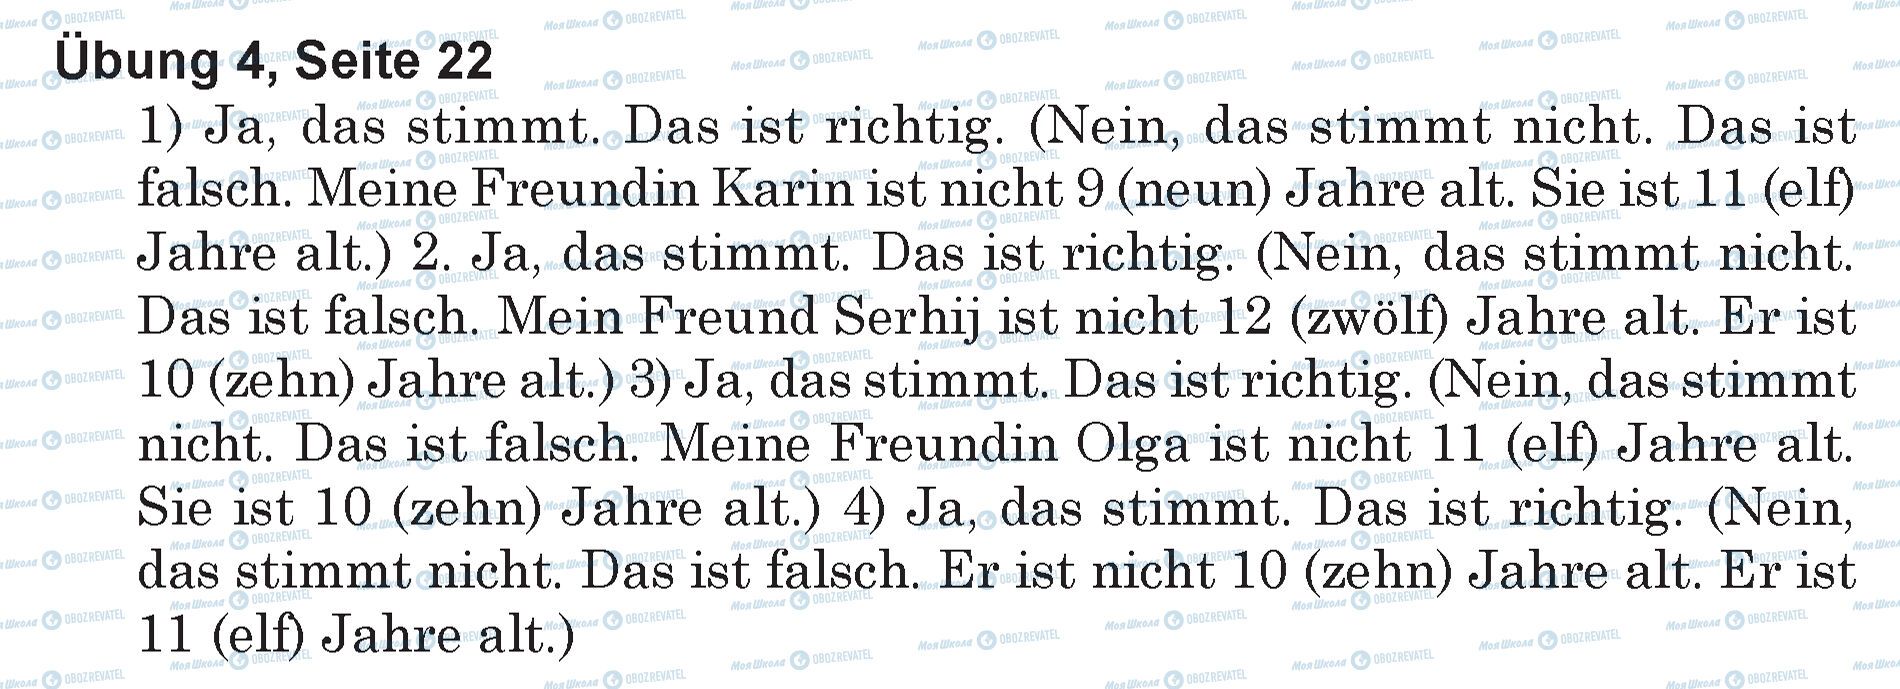 ГДЗ Німецька мова 5 клас сторінка Ubung 4, Seite 22